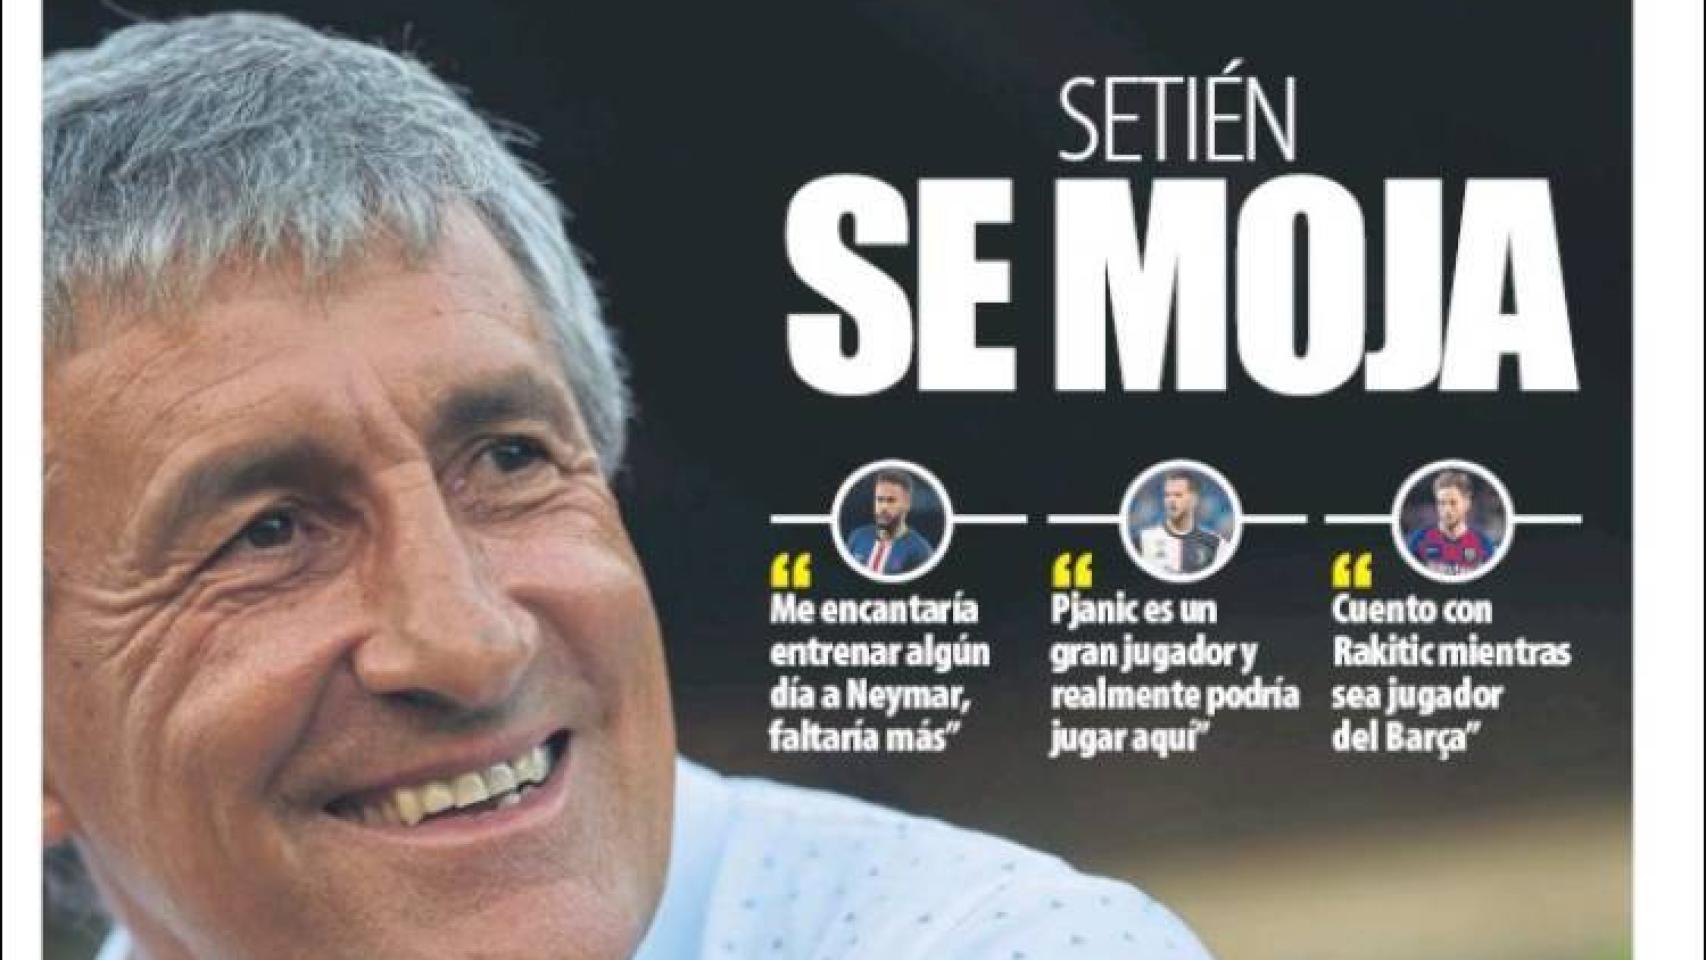 La portada del diario Mundo Deportivo (23/05/2020)